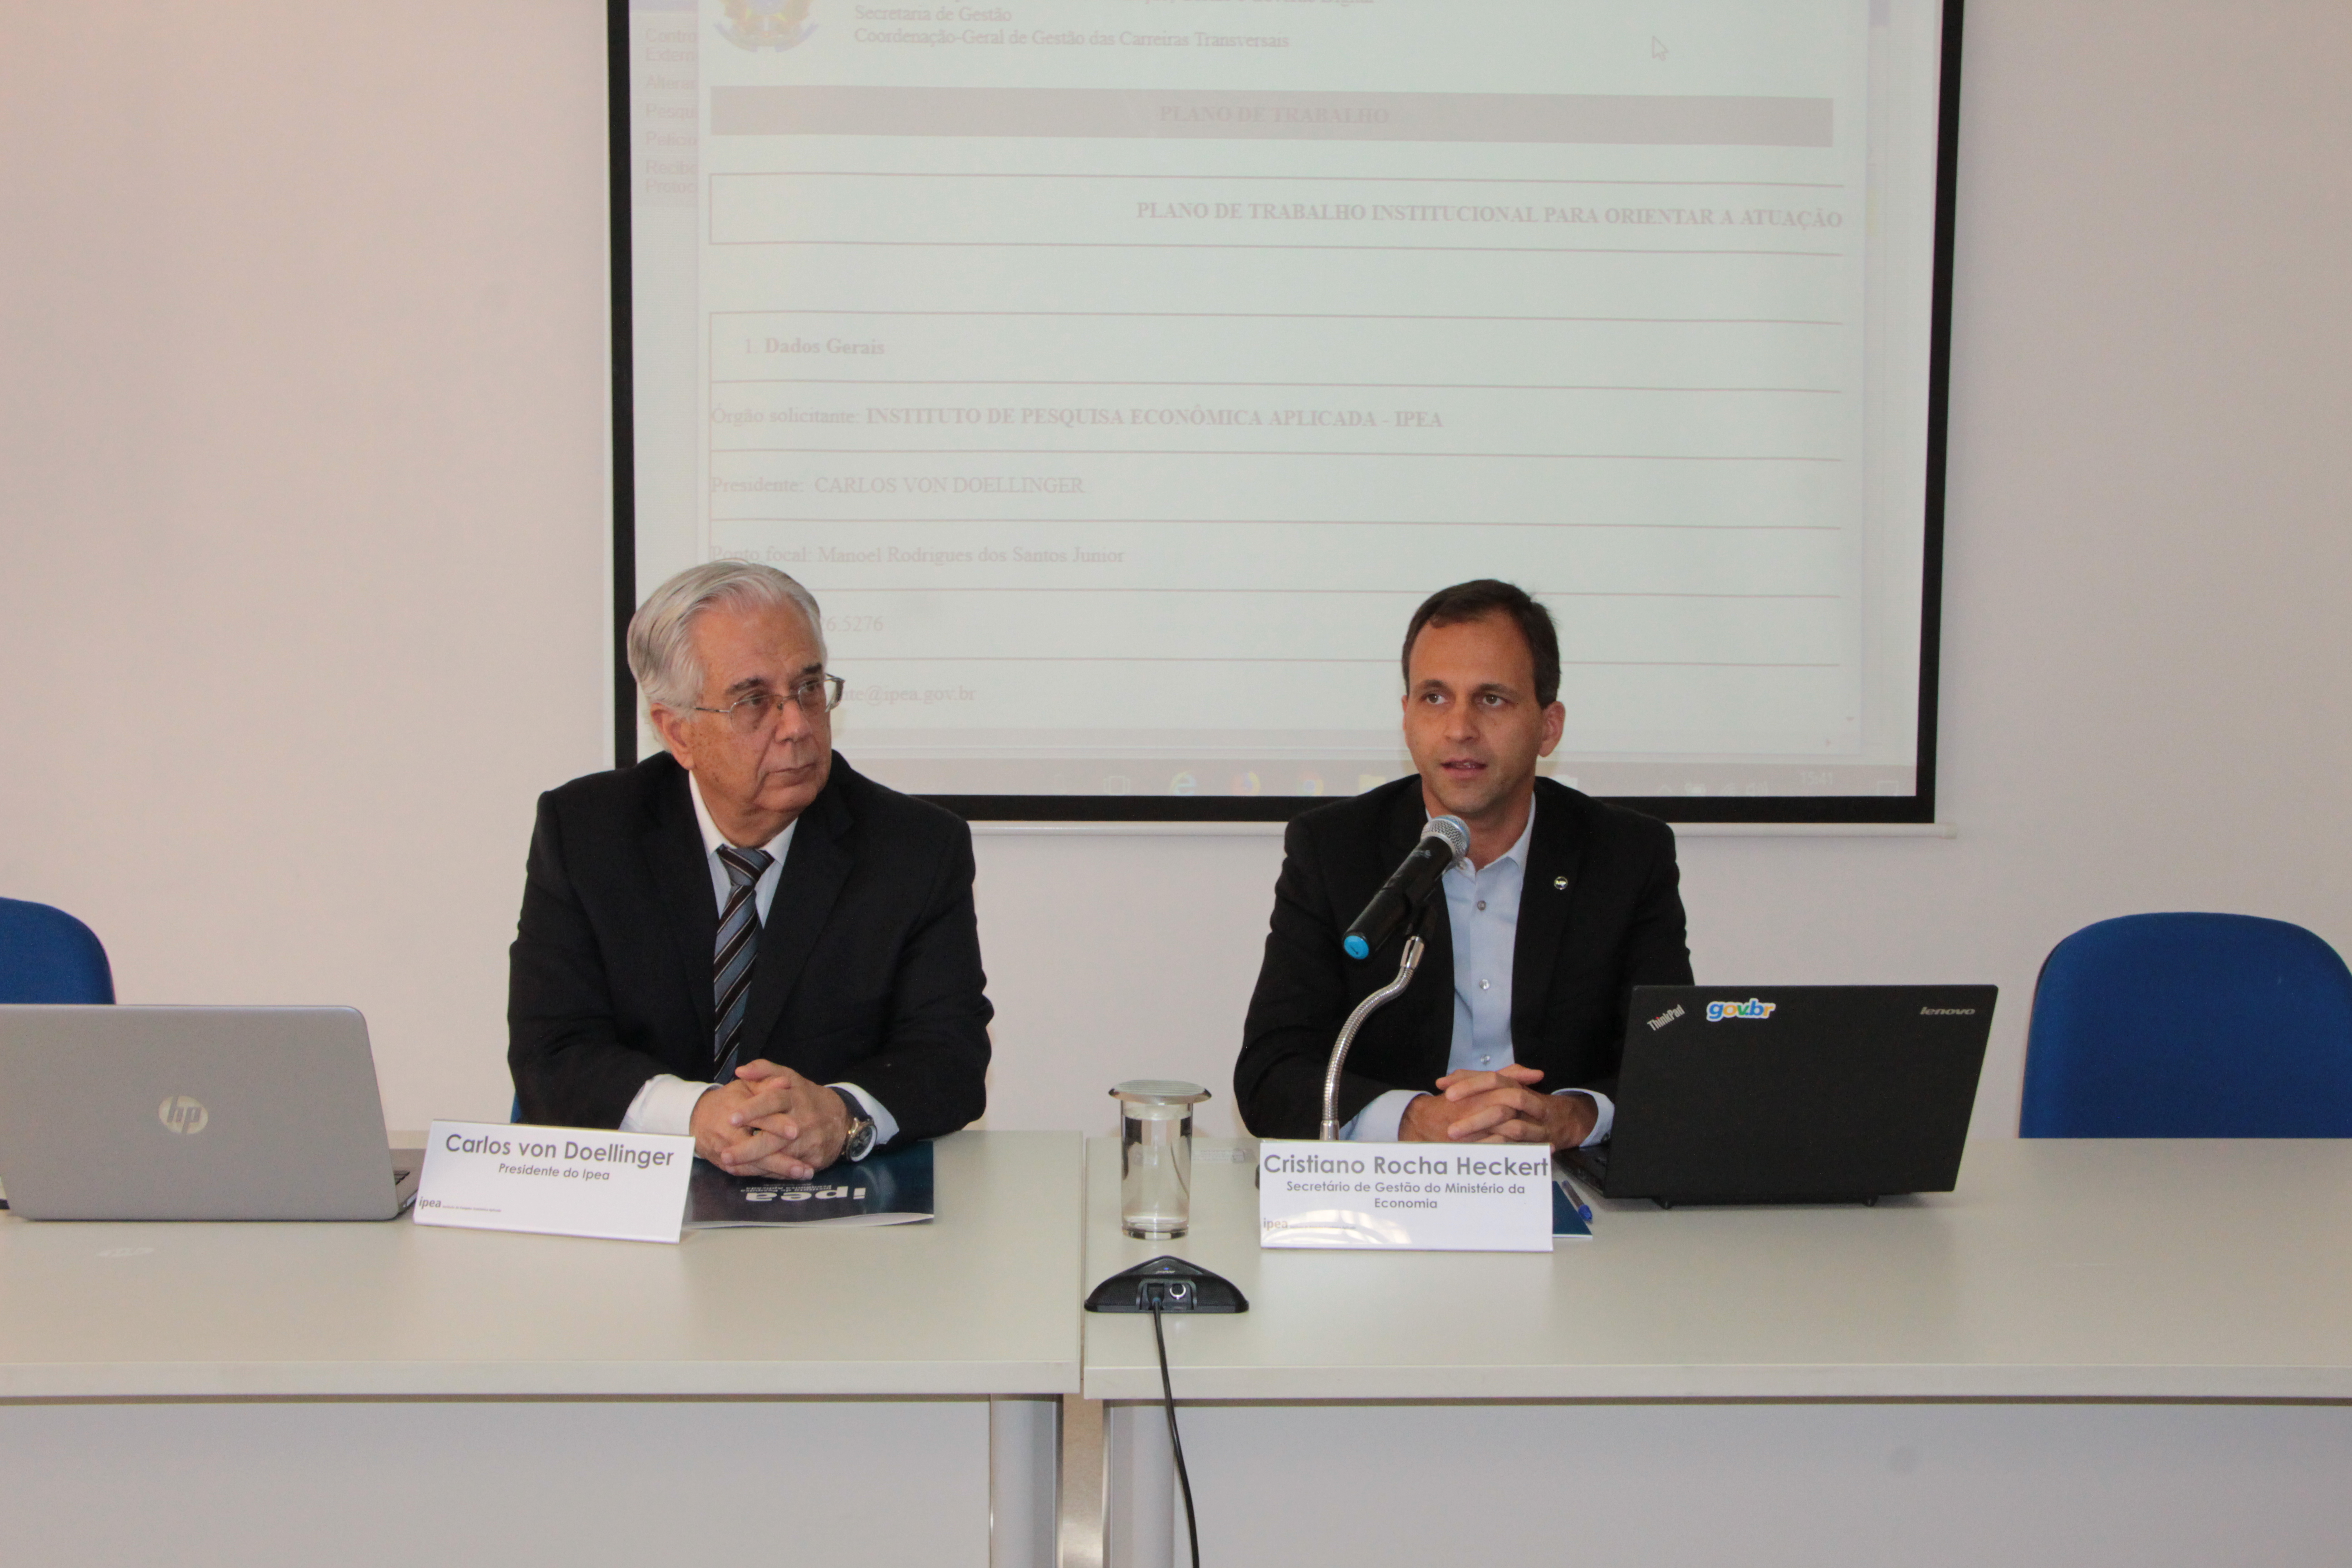 Secretário de Gestão, Cristiano Heckert, e presidente Ipea, Carlos Von Dollinger, firmam plano de trabalho. Foto: Clésio Rocha/ME